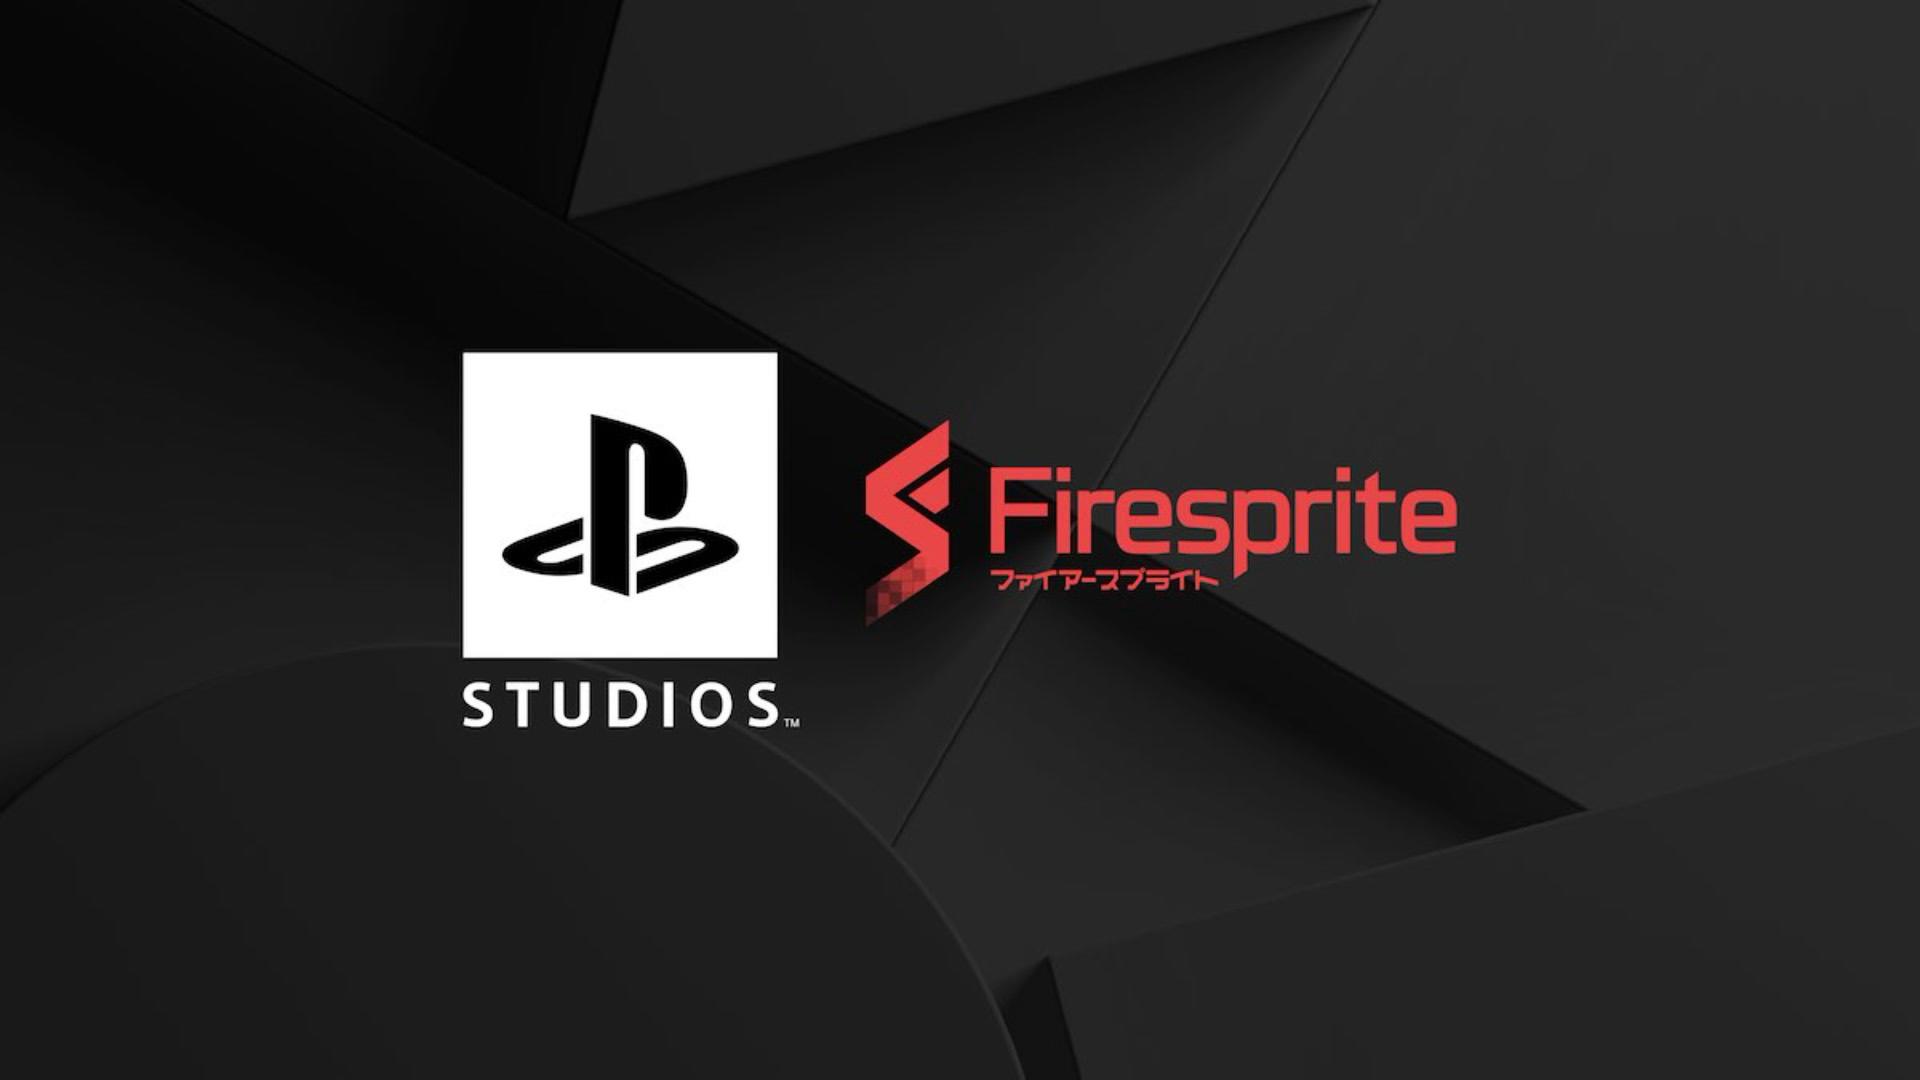 جابجایی استودیو Firesprite سونی به مکان بزرگ با هدف تبدیل شدن به تیمی قدرتمند و خلاق